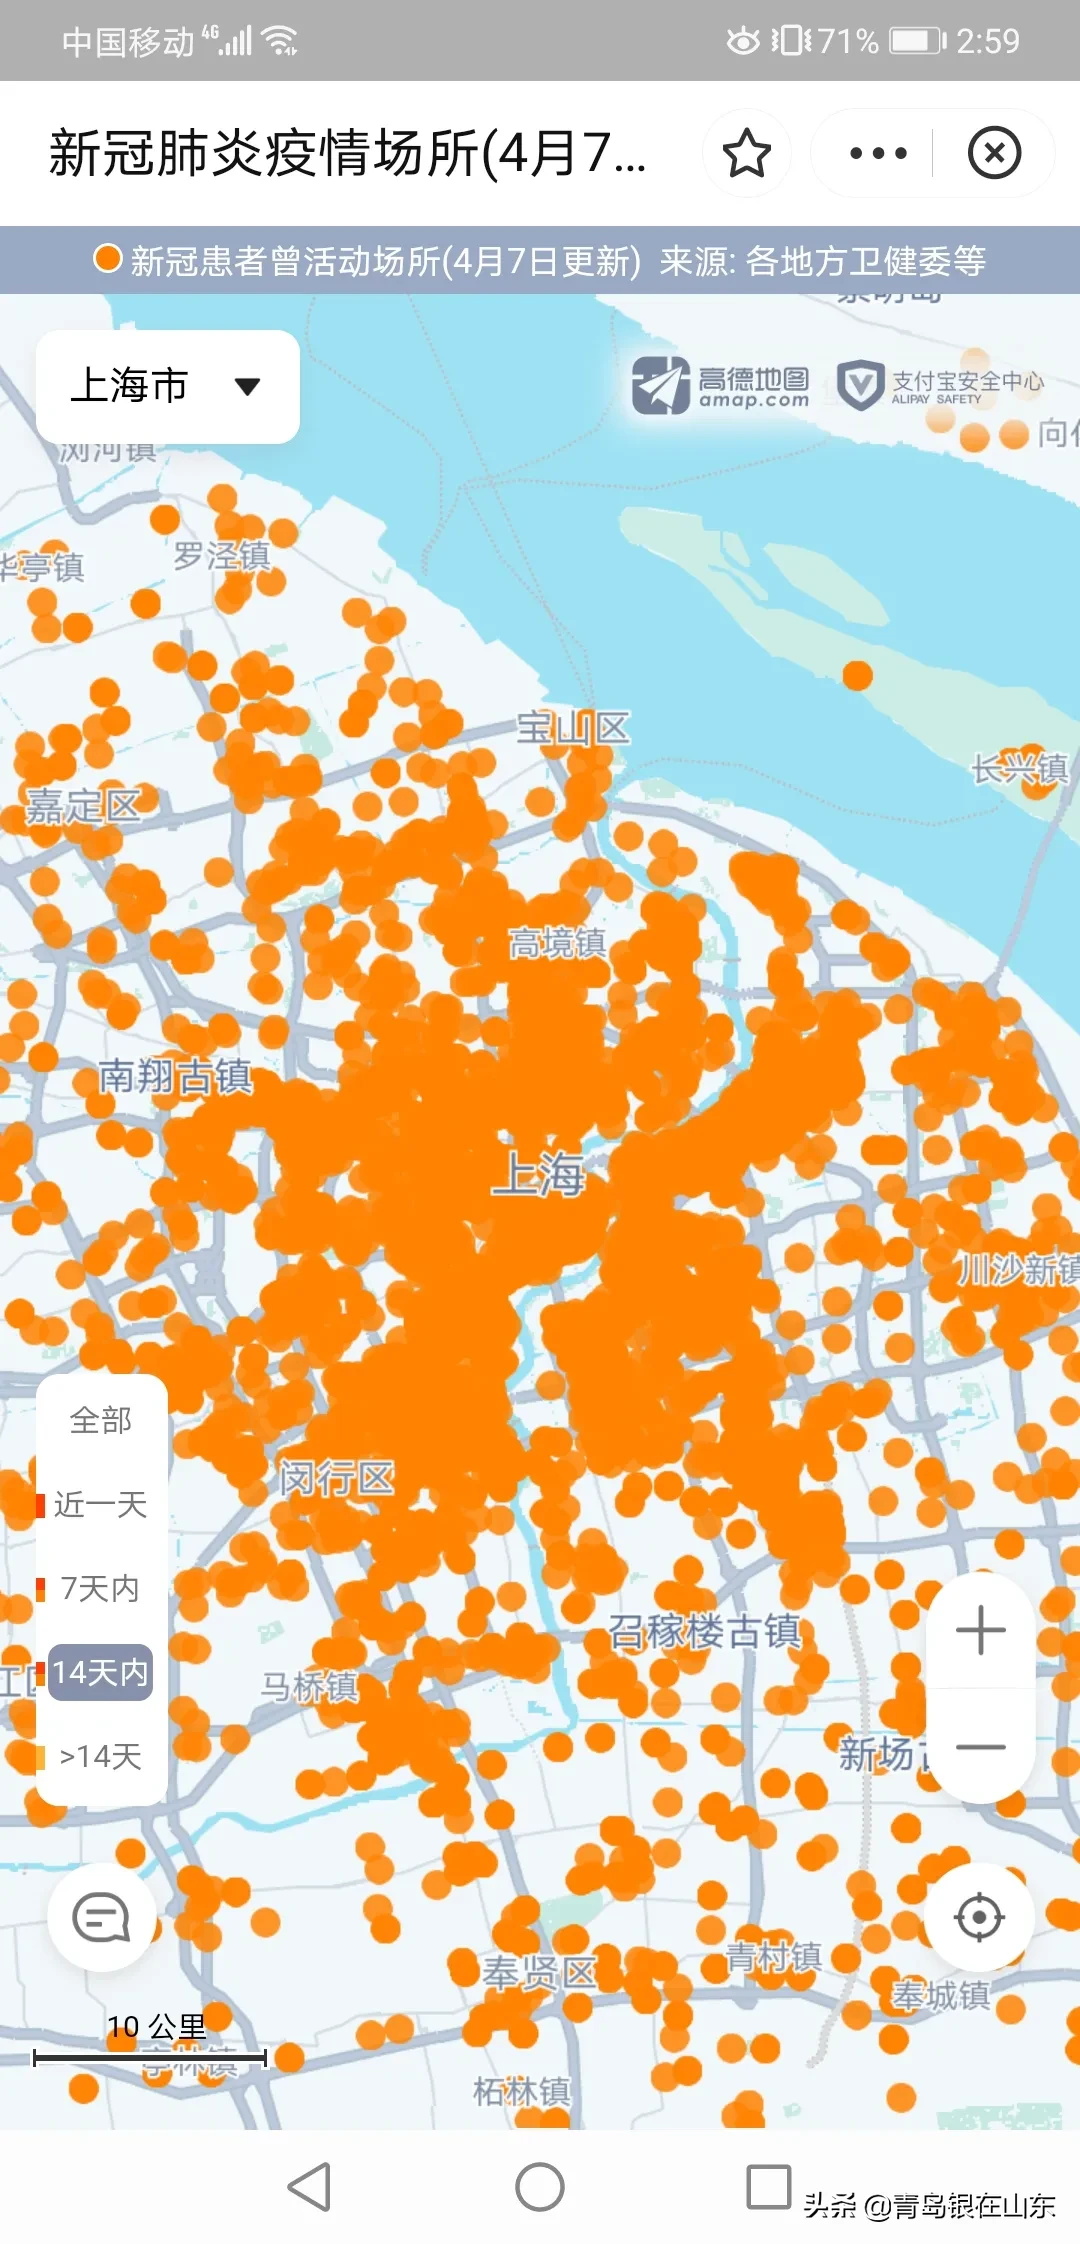 上海疫情地图上海风险地区最新划分上海新冠分布图实时